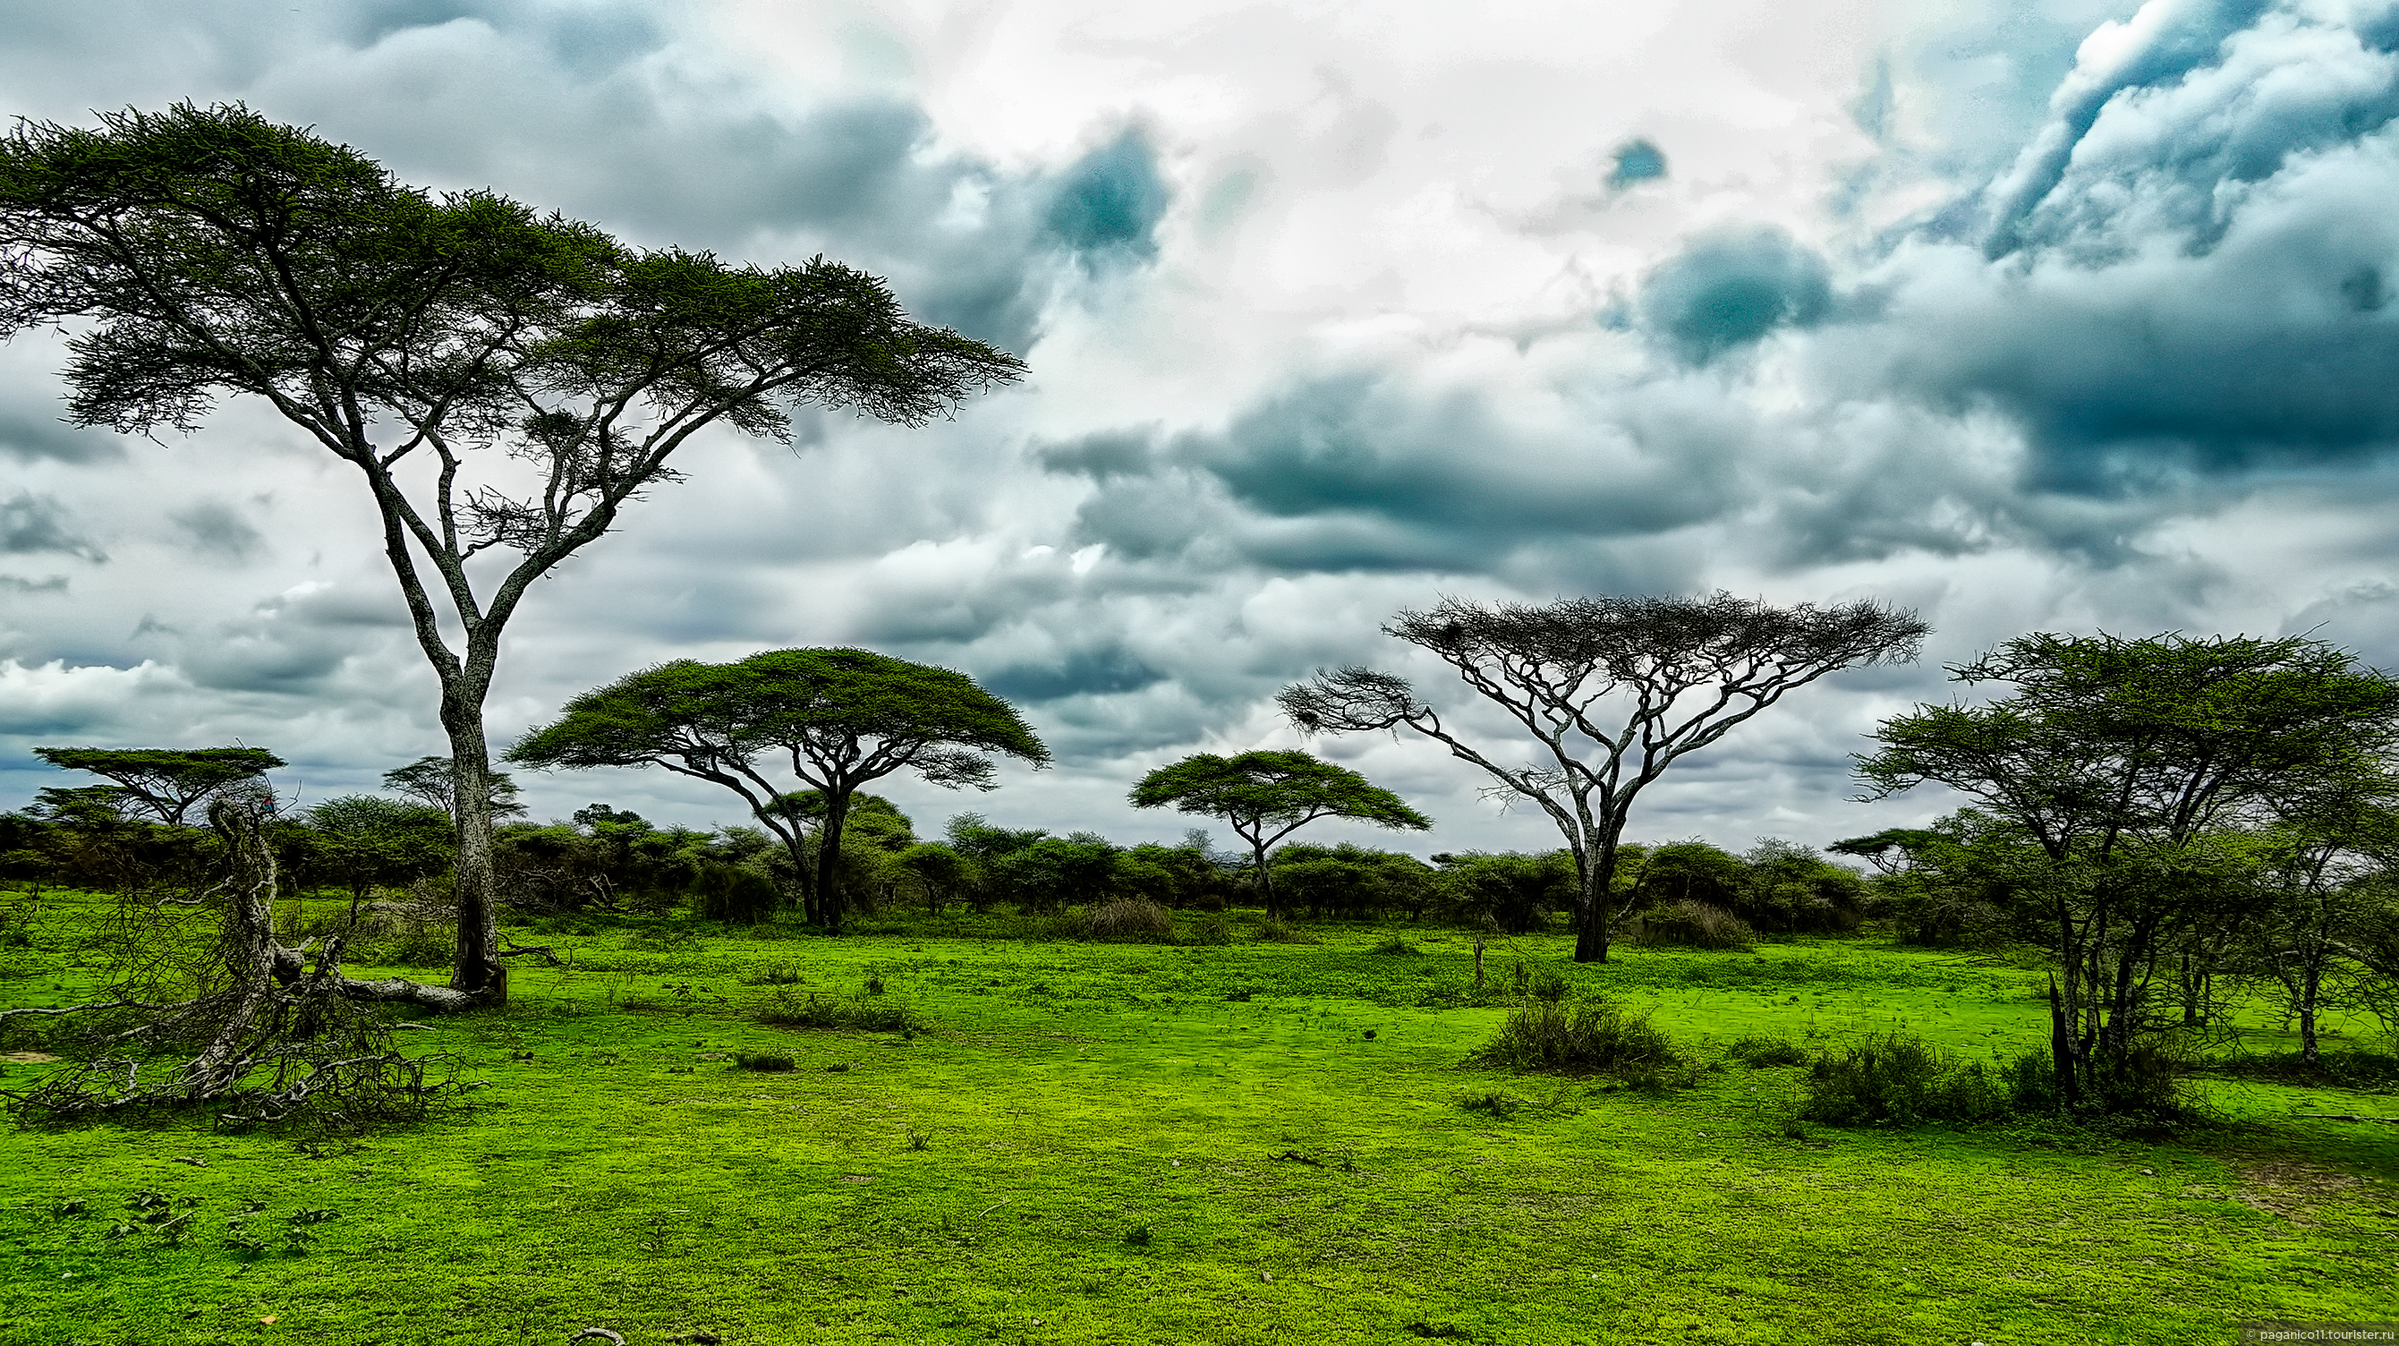 Редколесья в Танзании. Парк в Танзании. Национальный парк Джангл в Танзании. Танзания ландшафт. Саванны и редколесья занимают обширные равнины африки